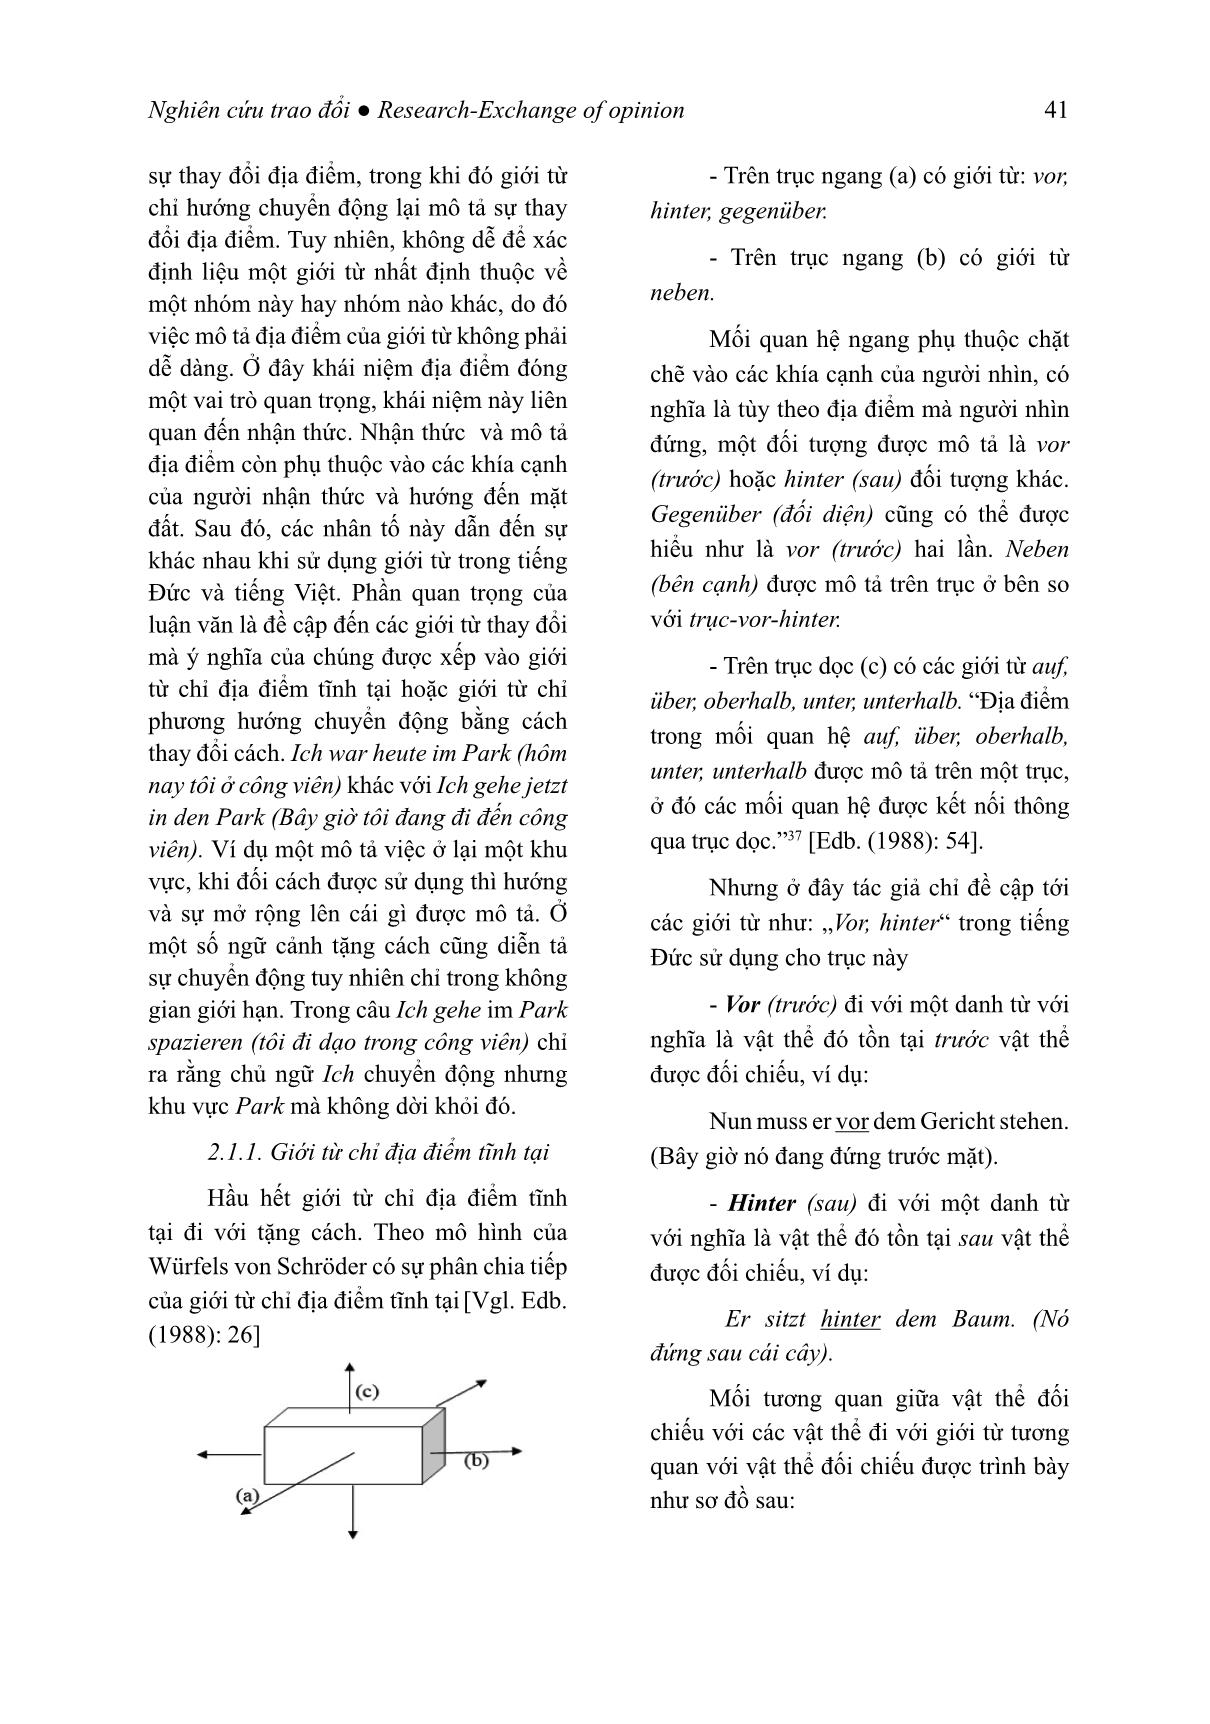 Đối chiếu giới từ địa điểm trong tiếng Đức vor (trước)/ hinter (sau) với tiếng Việt trang 3